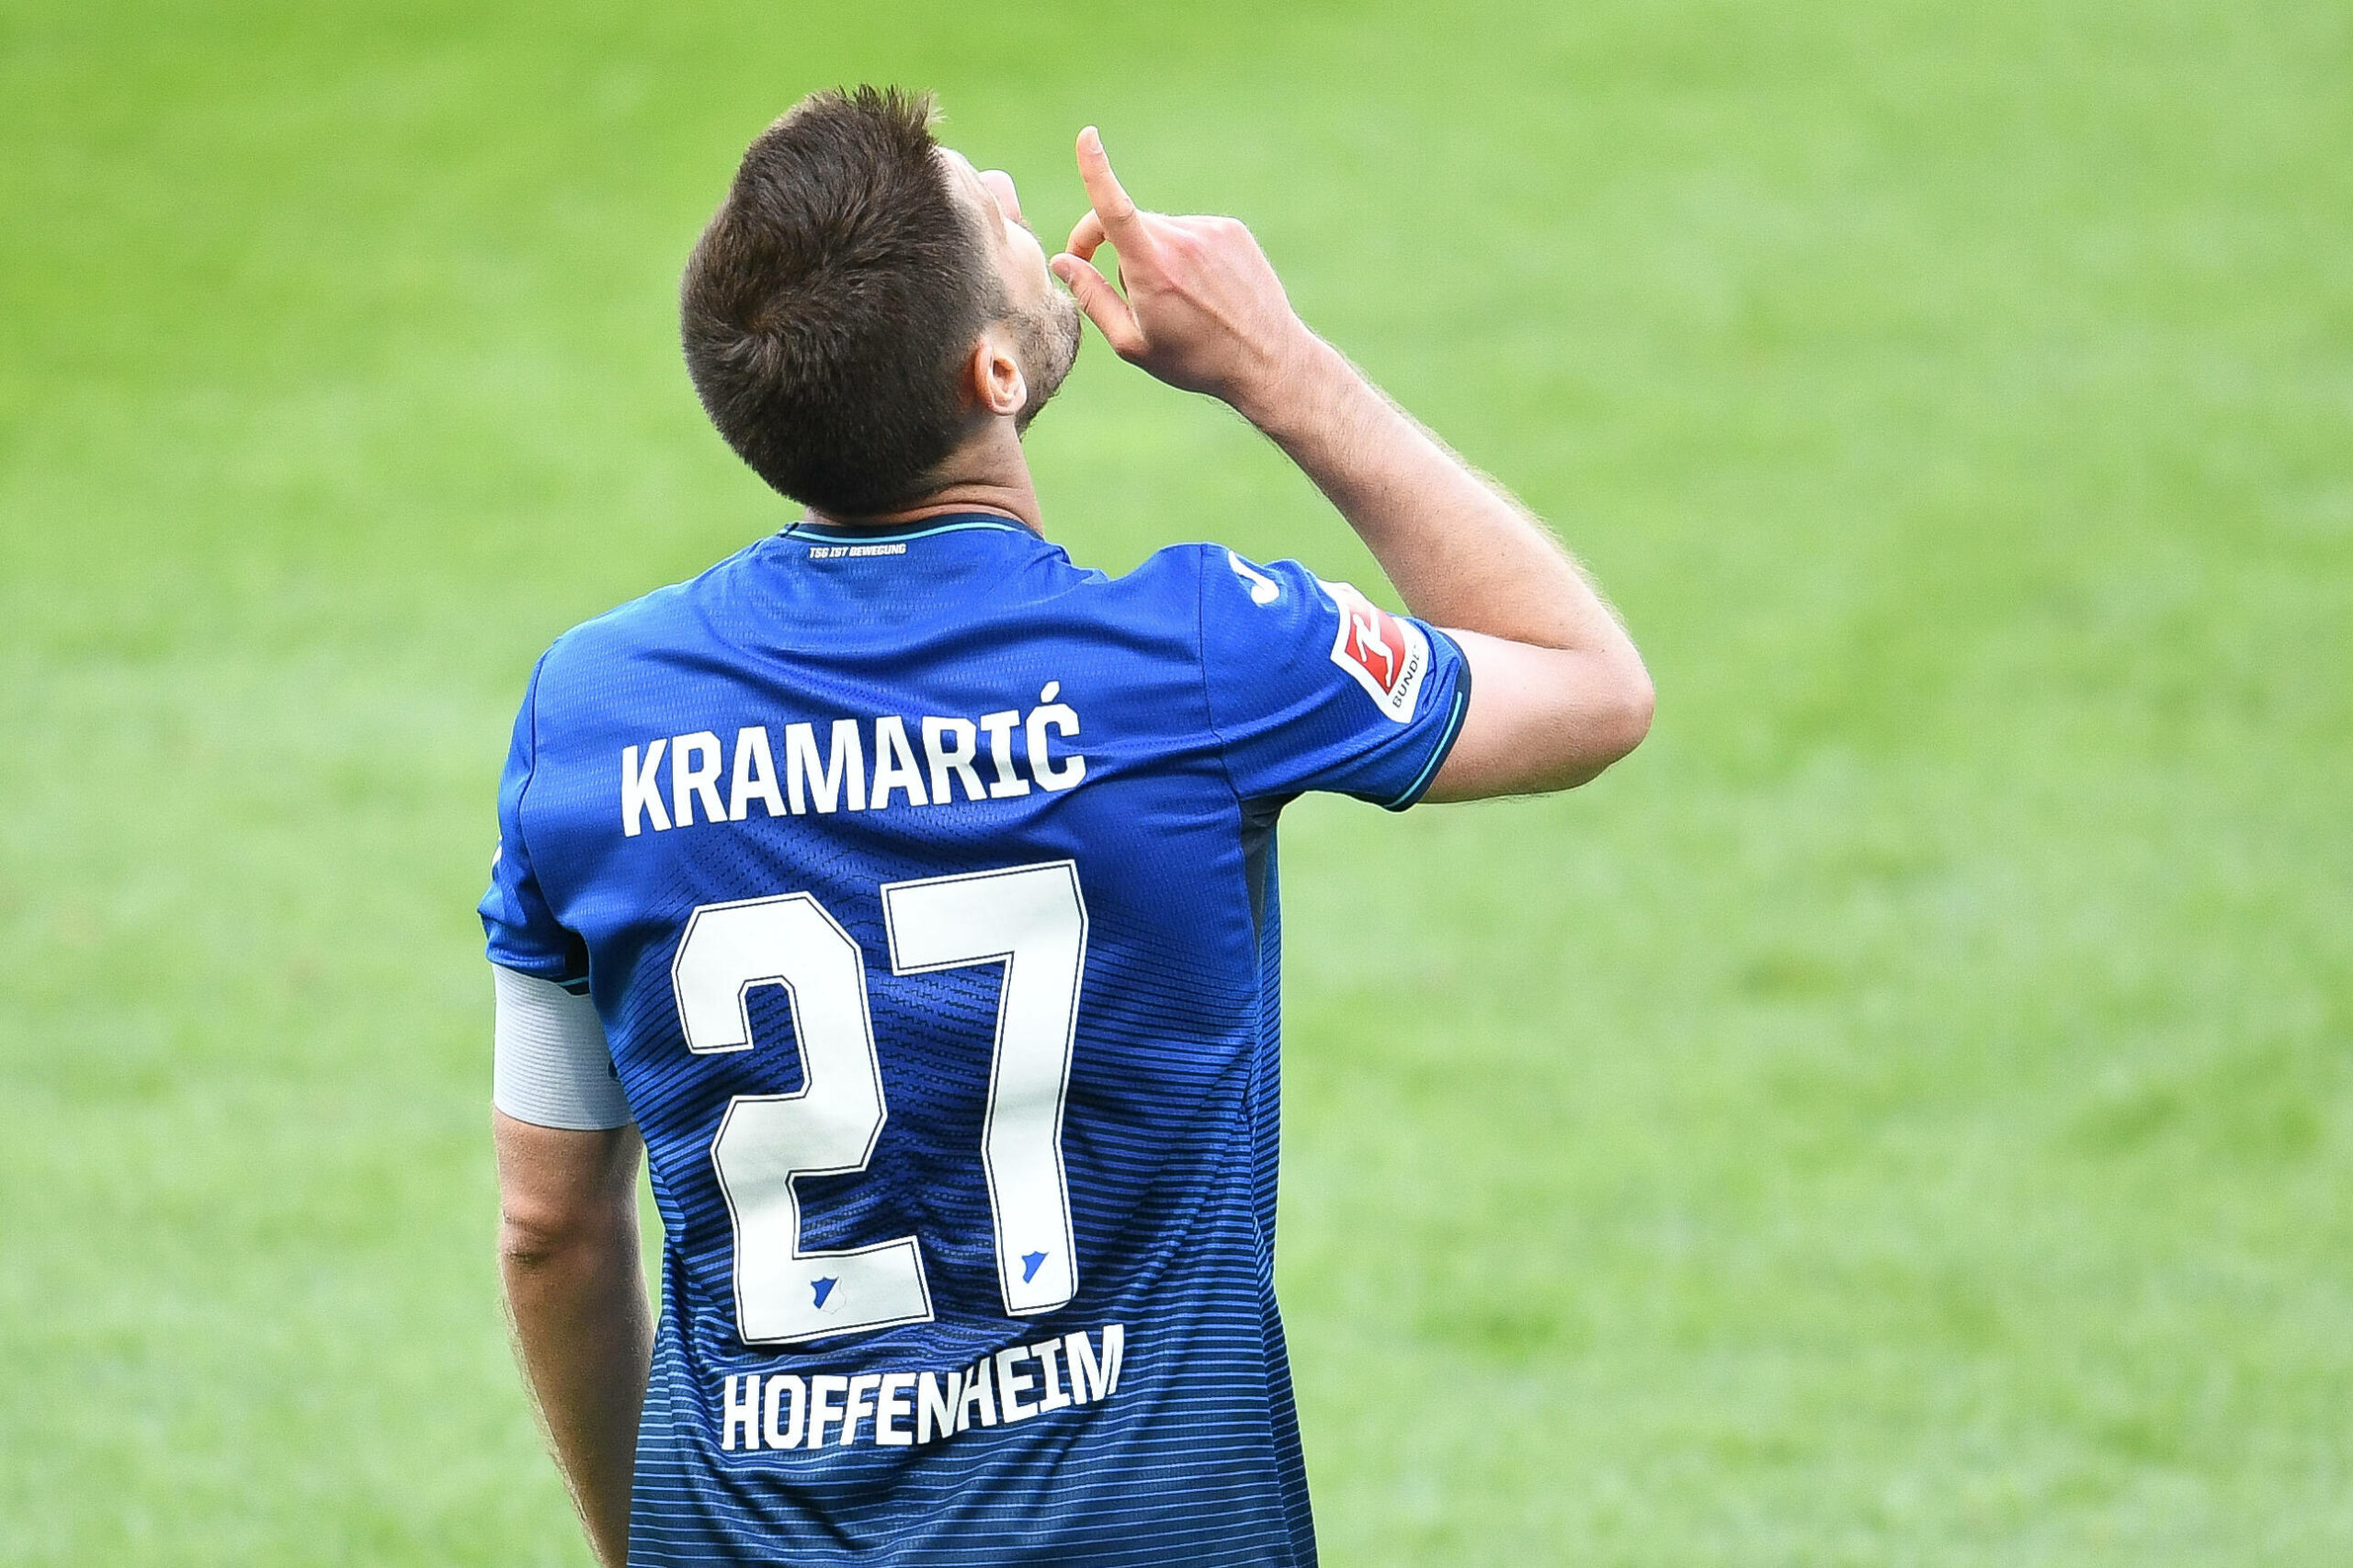 Hoffenheim mit Vertragsangebot für Kramarić – Auch Grillitsch und Geiger sollen verlängern